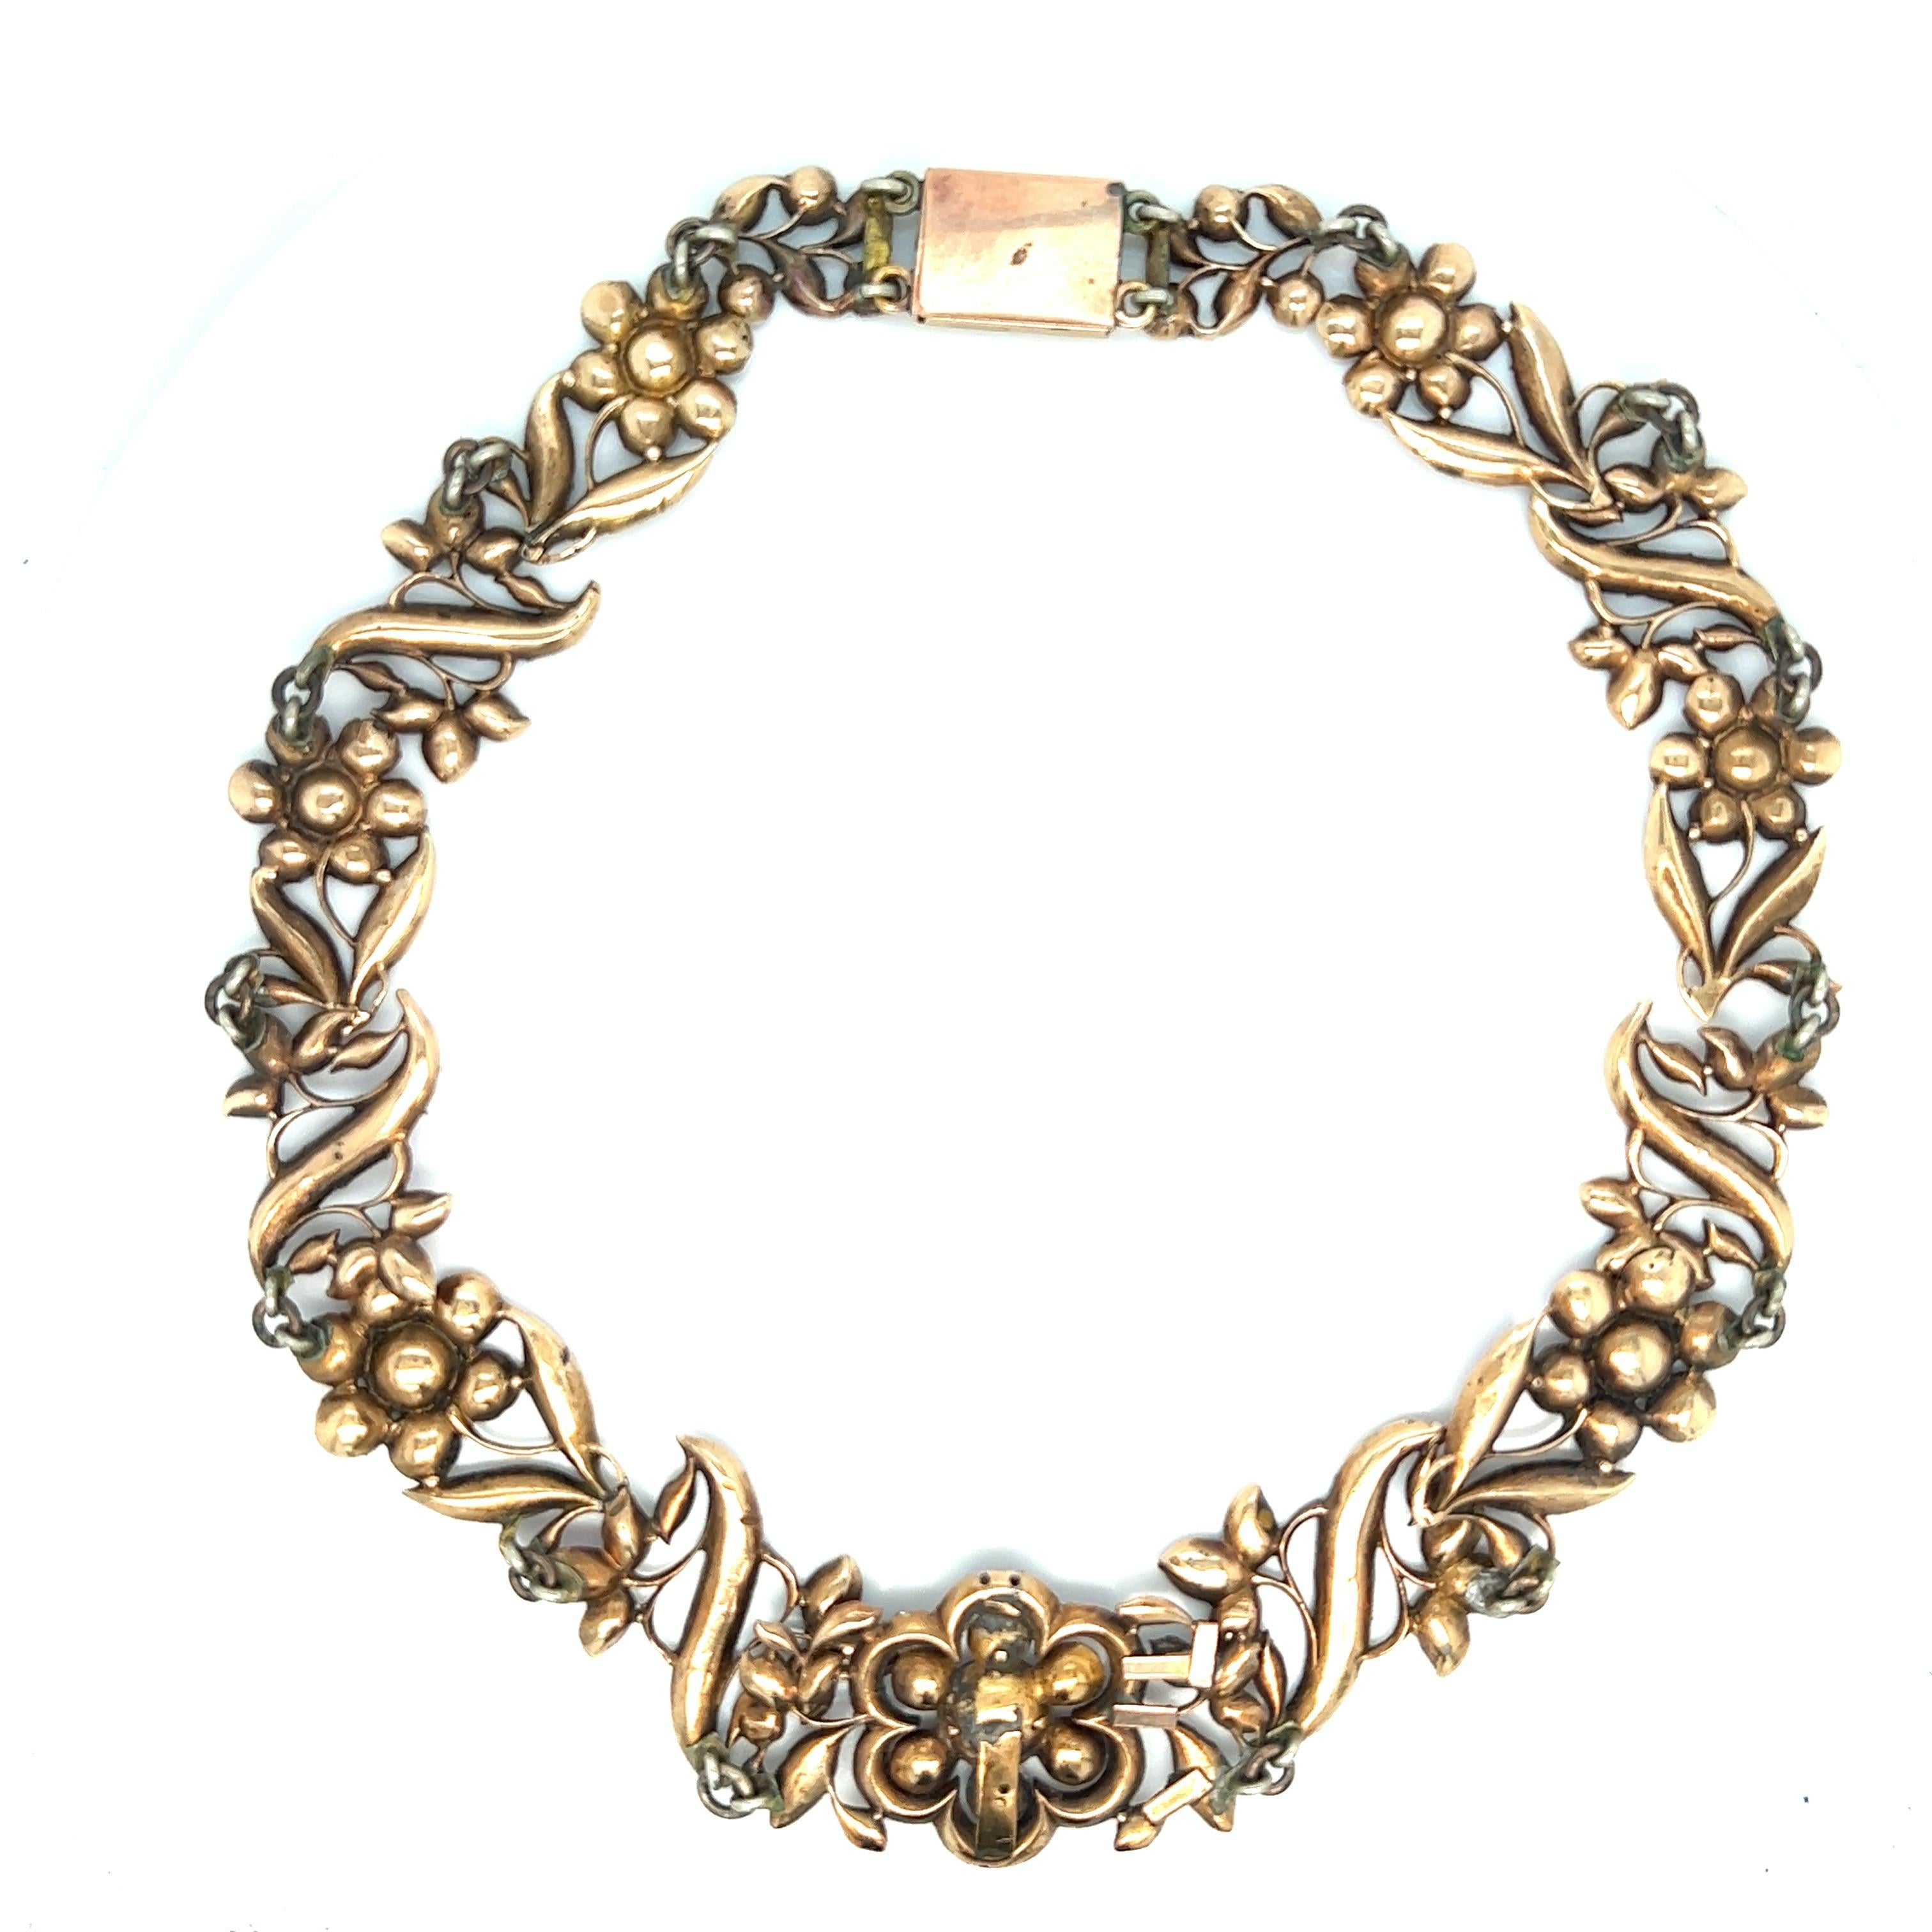 Antike georgianische Granat-Halskette mit Folienrücken, um 1850

In Form von Blumen, besetzt mit Granaten mit Folienrücken, in einer passenden Schachtel 

Größe: Breite 0,88 Zoll, Länge 14,25 Zoll
Gesamtgewicht: 44,2 Gramm 